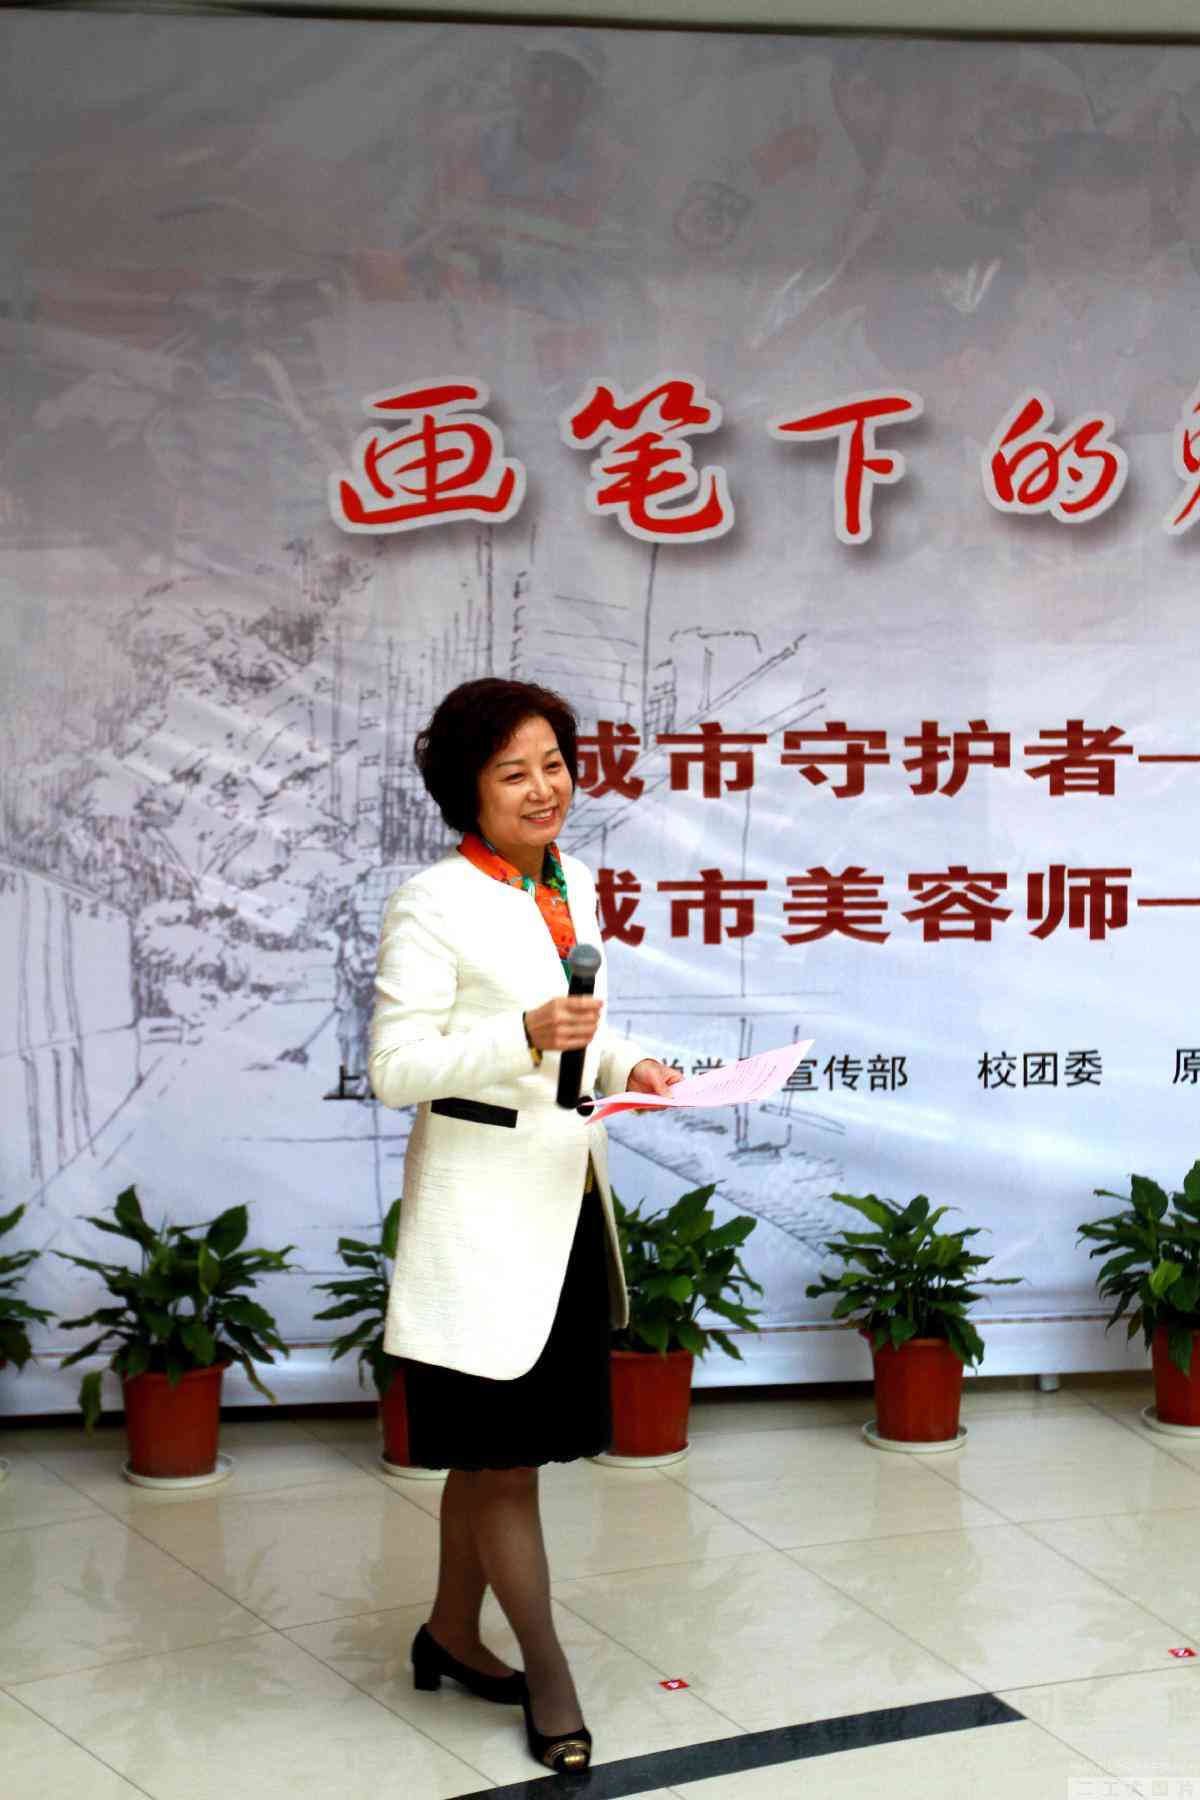 “画笔下的魅力上海”展览揭幕仪式由宣传部部长黎霞主持